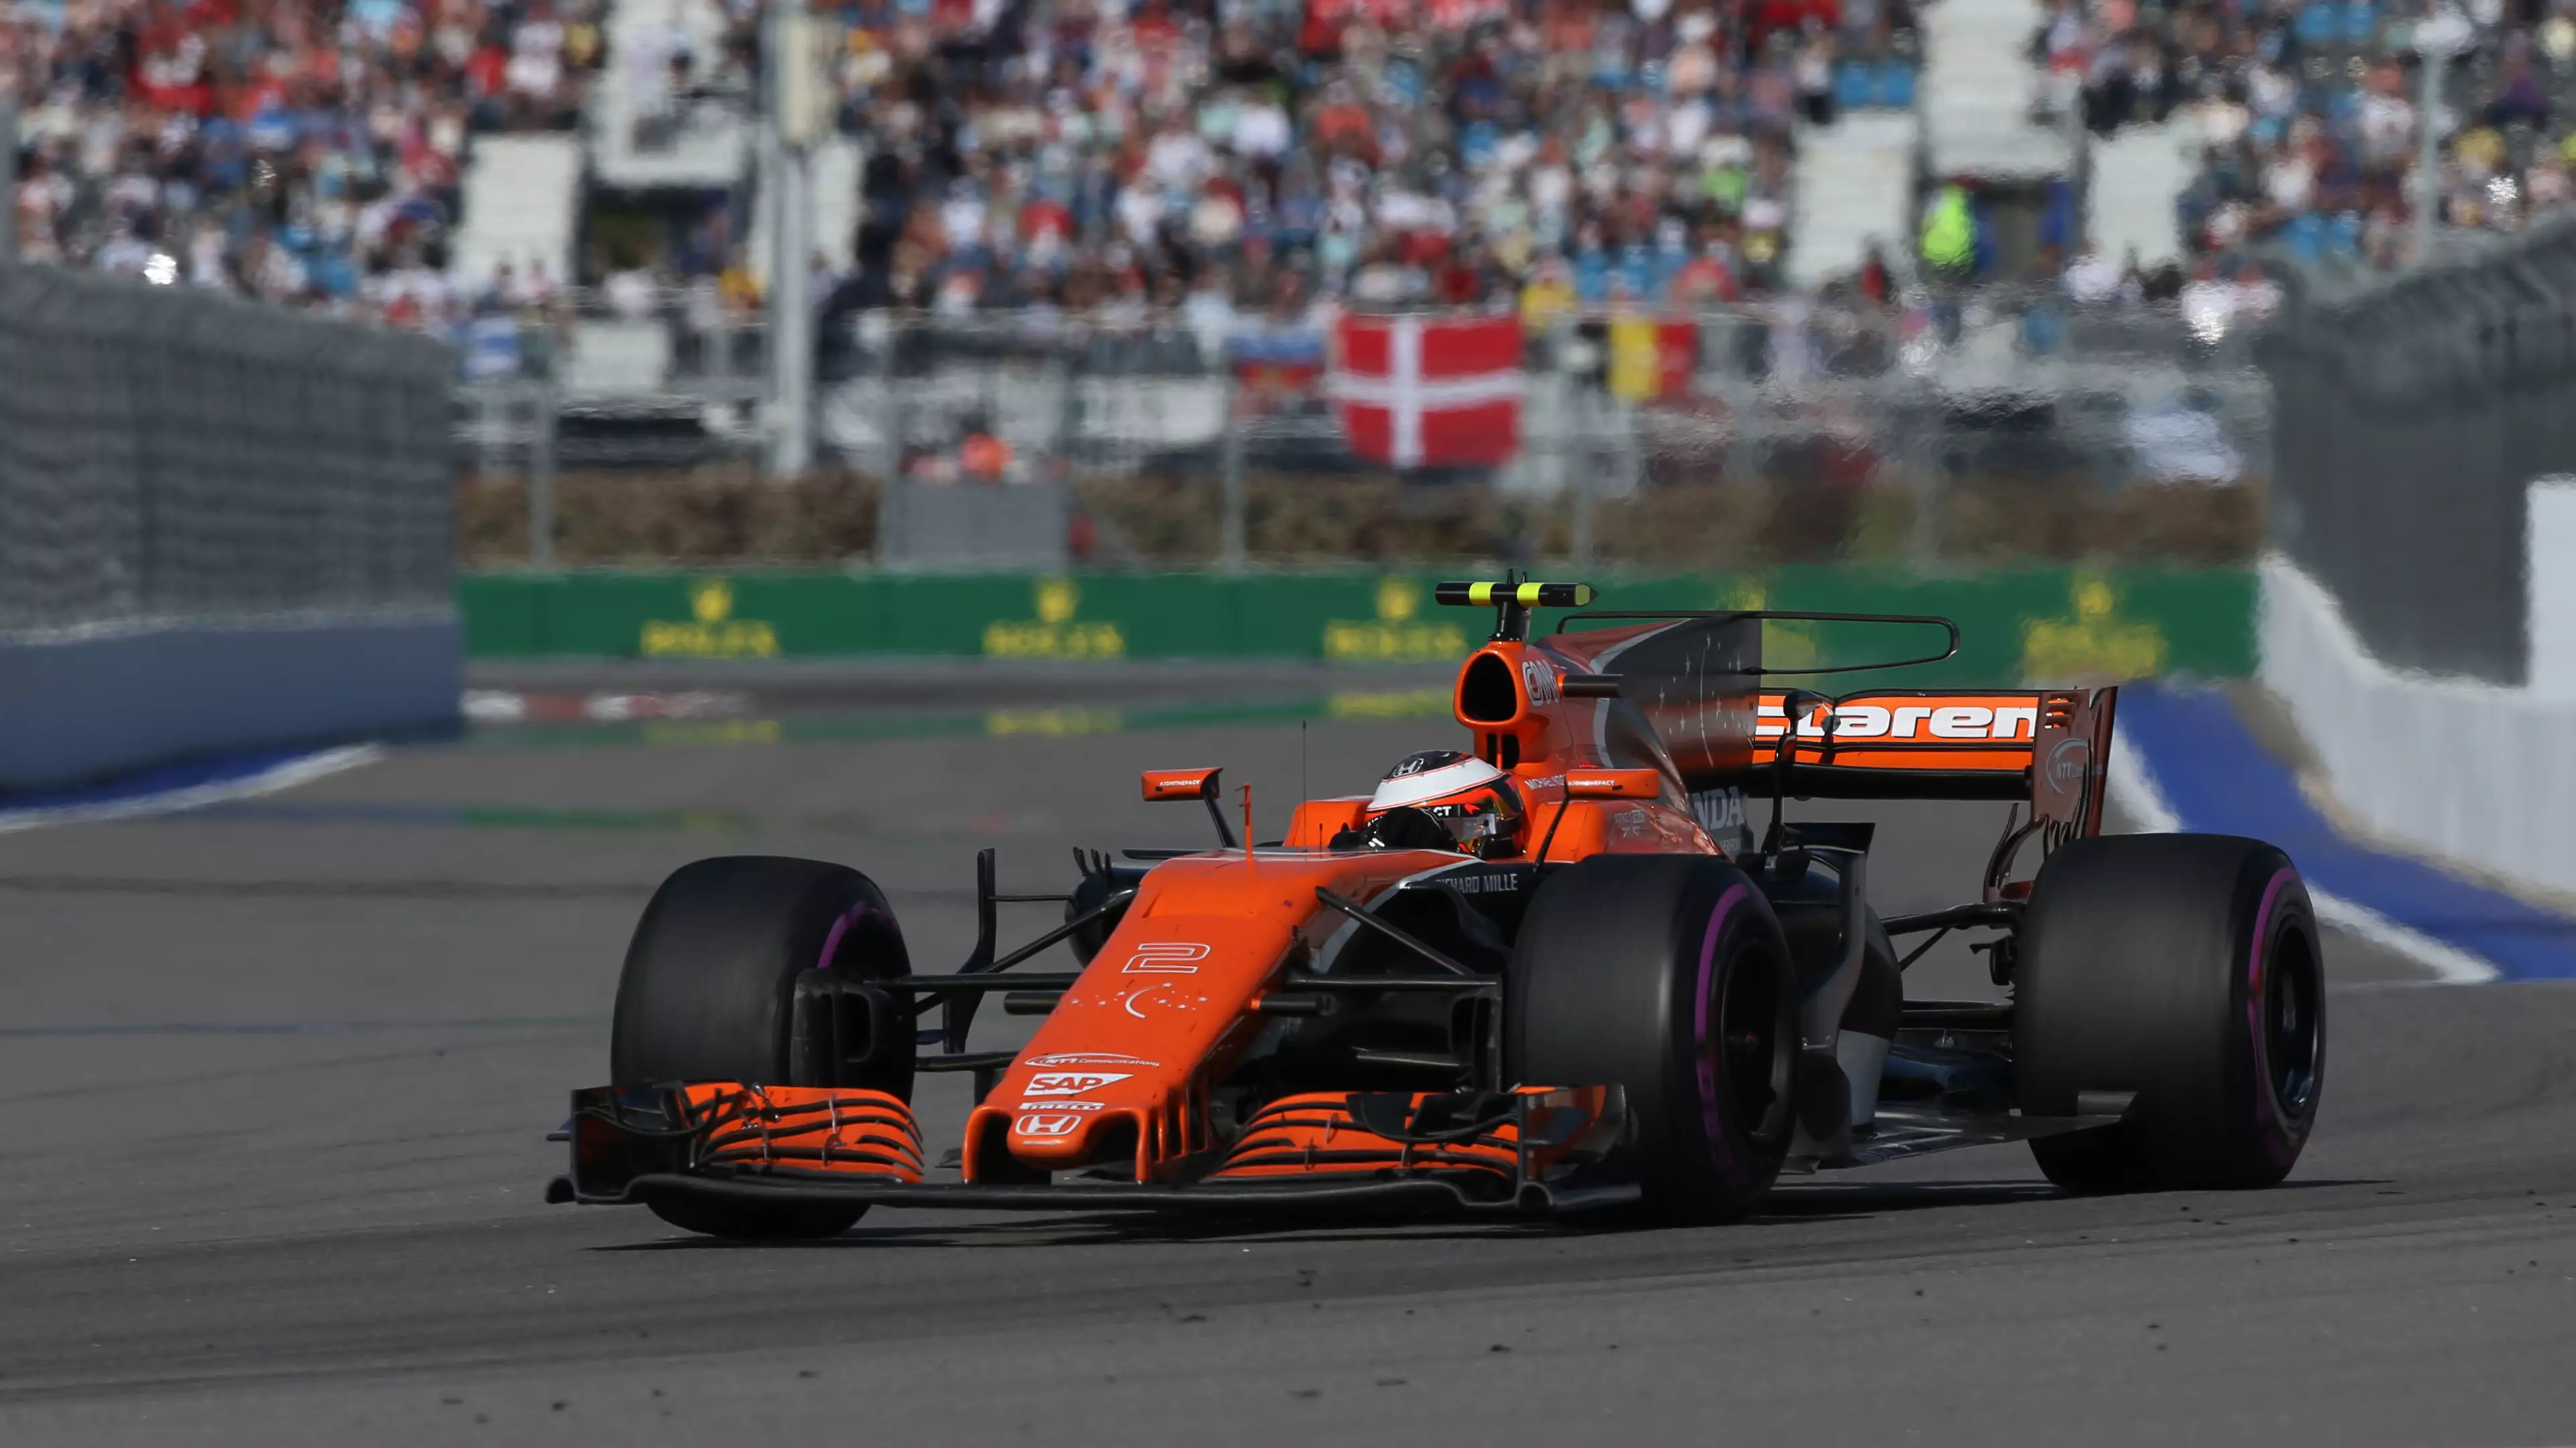 McLaren Back Honda To Turn Their Season Around